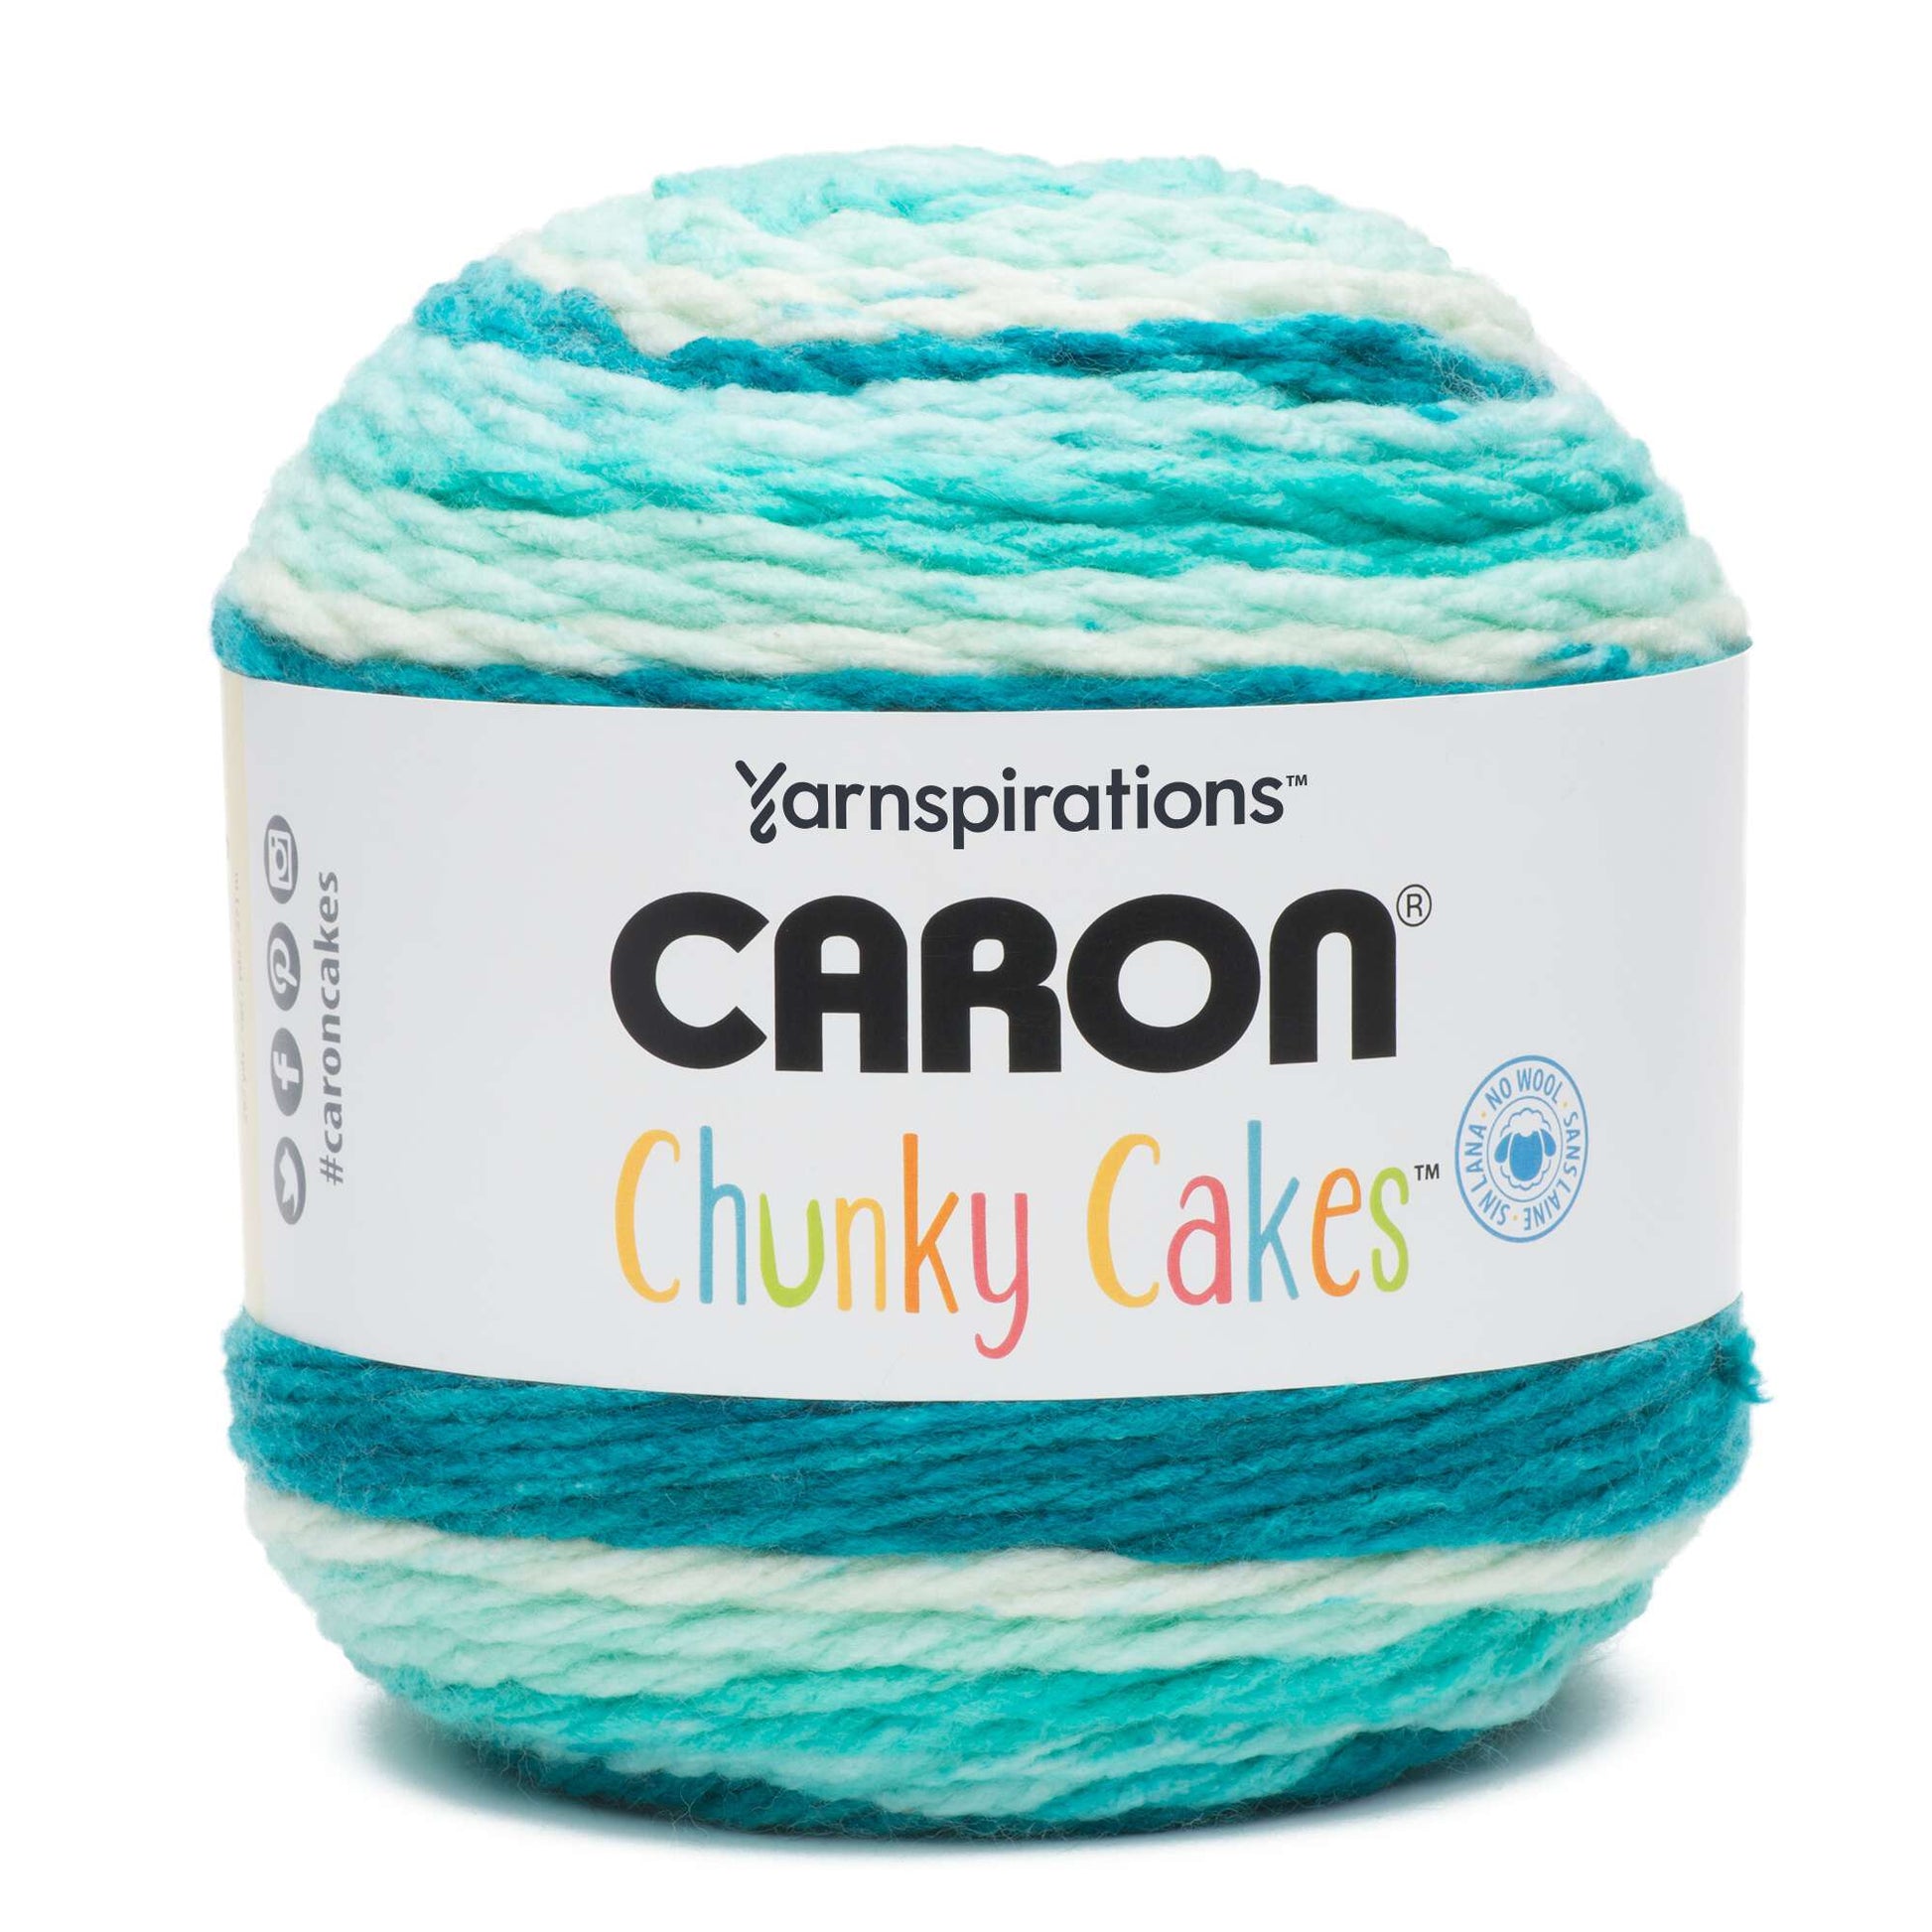 Caron Chunky Cakes Yarn - Clearance Shades